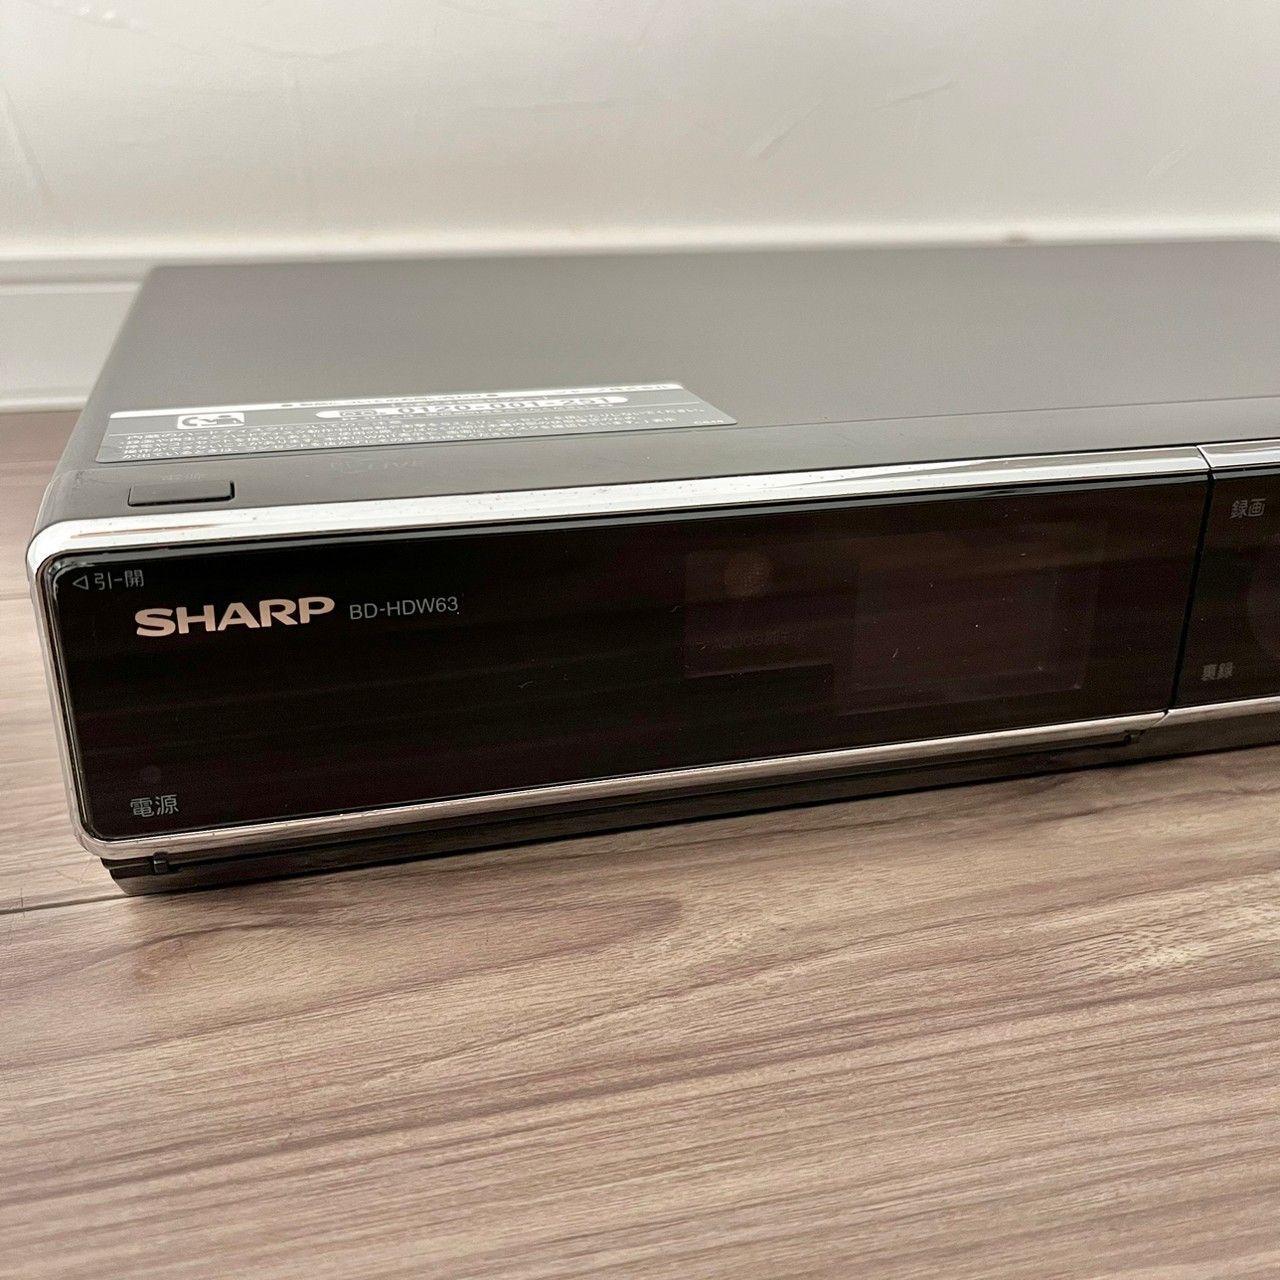 日本に SHARP シャープ BD-HDW63 ブルーレイディスクレコーダー 2010年 